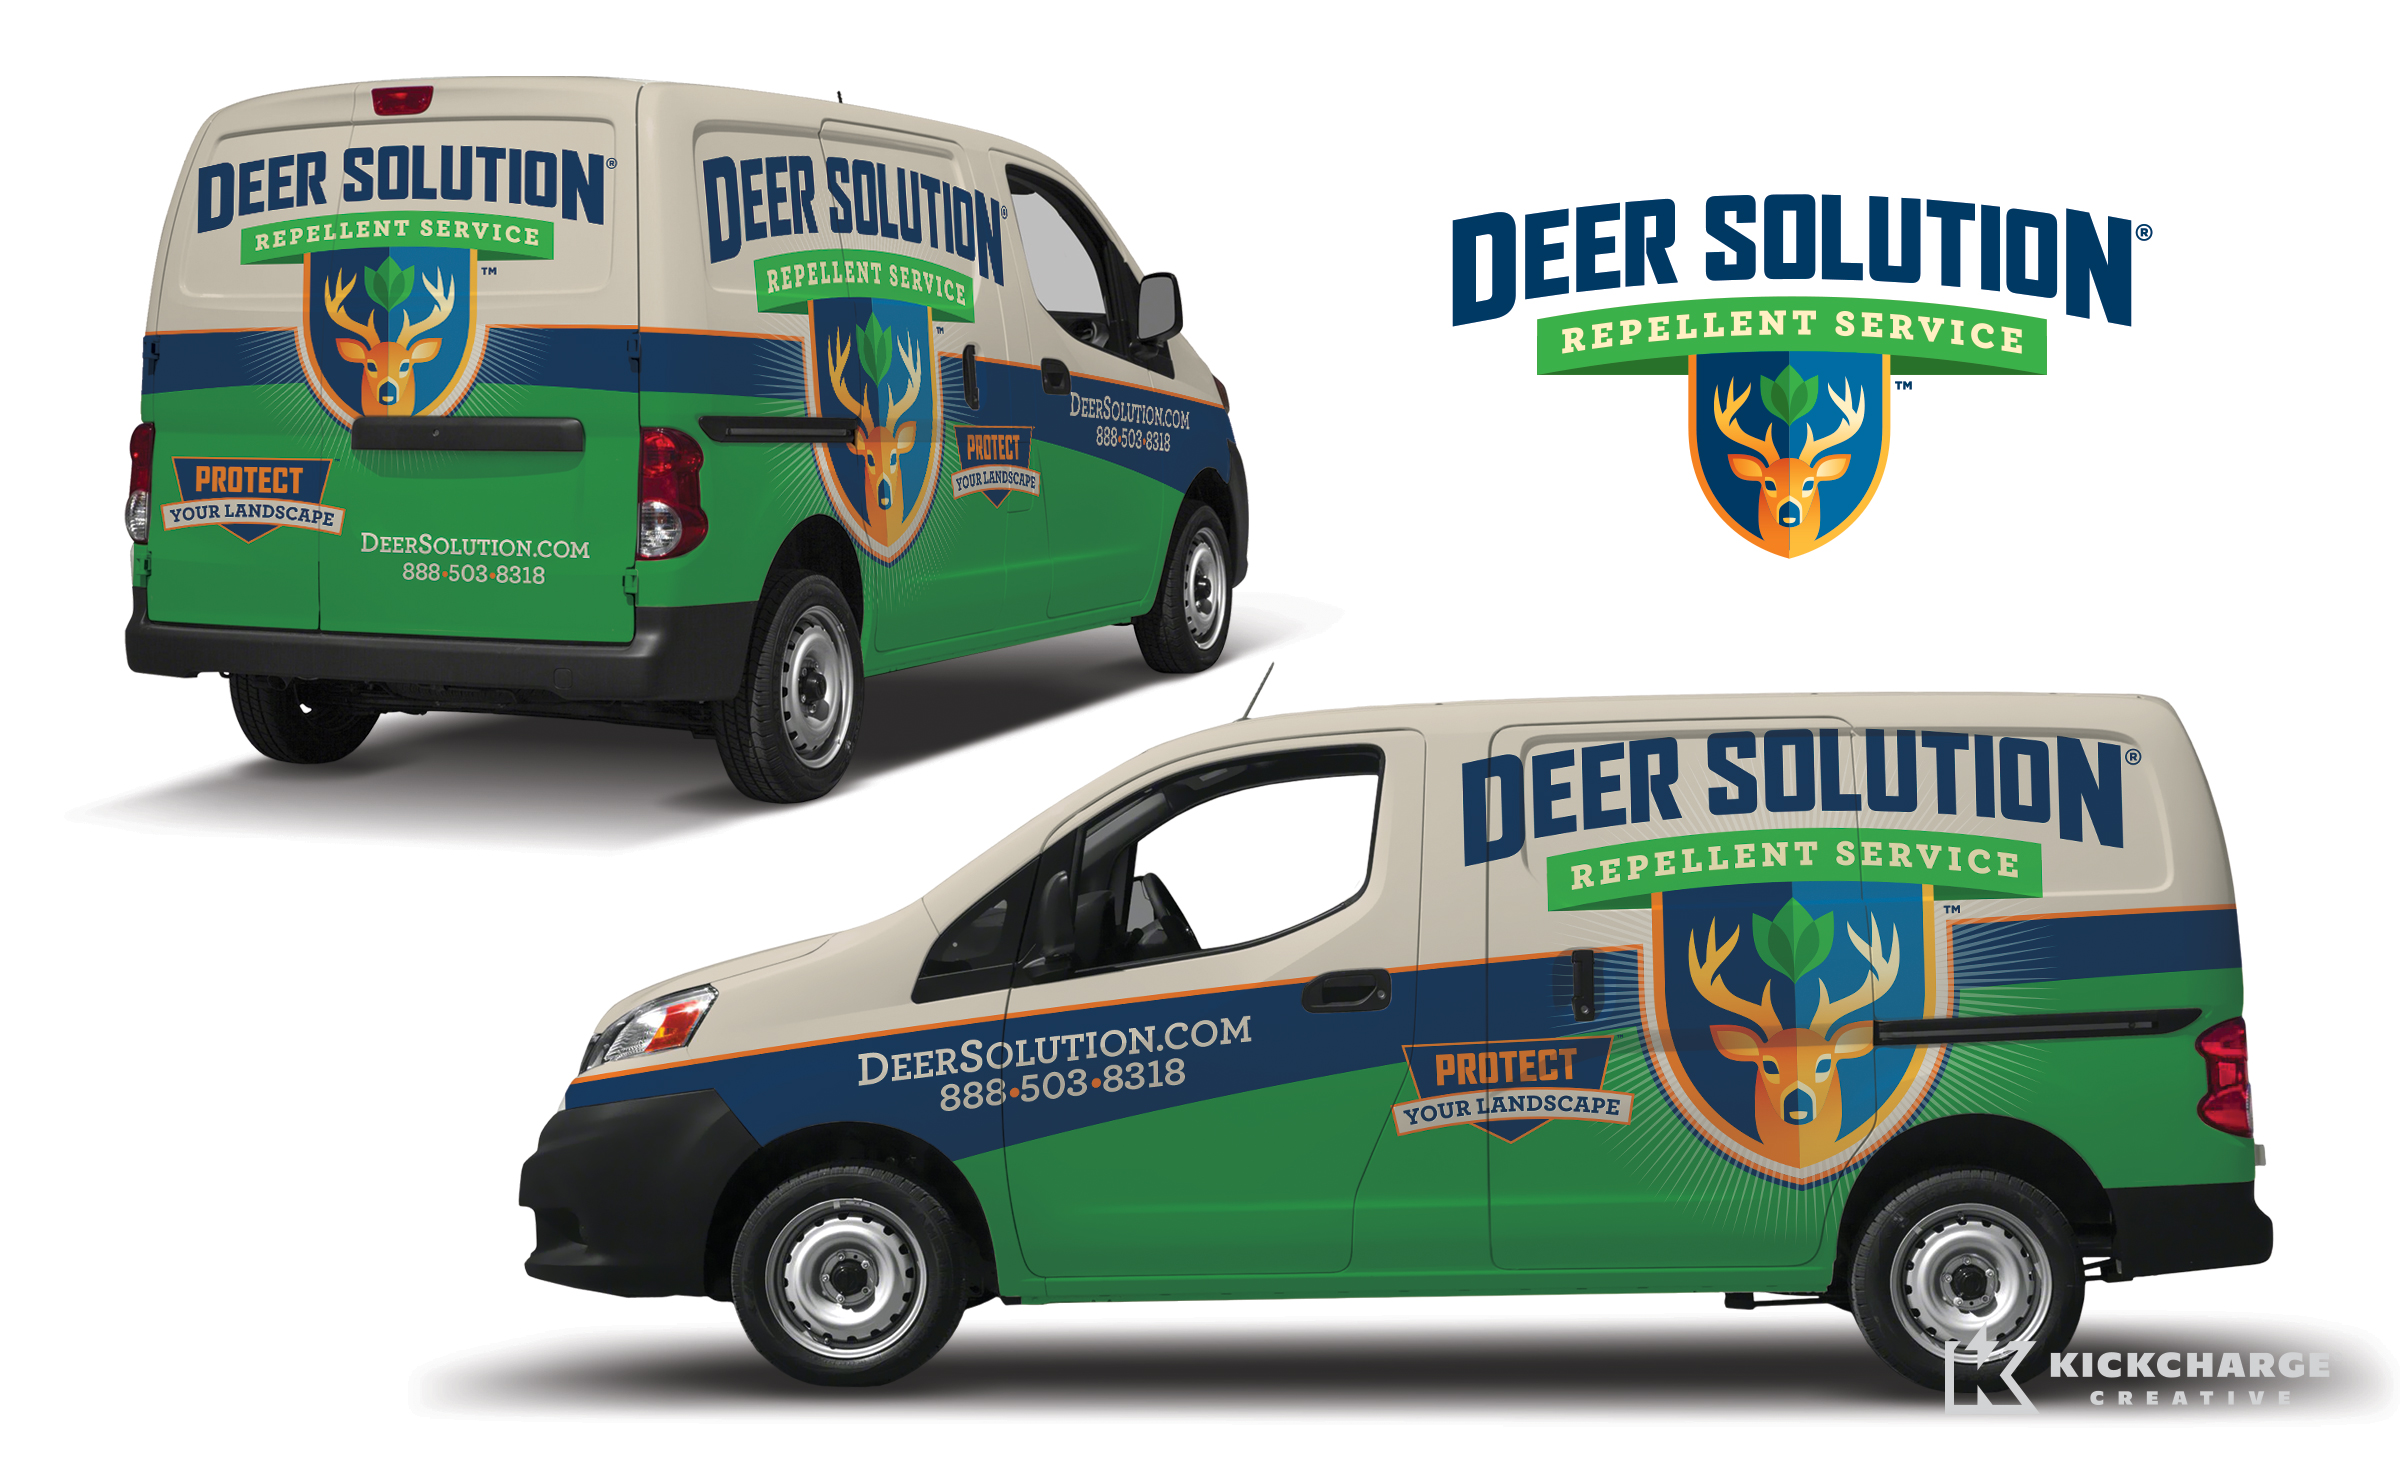 Deer Solution